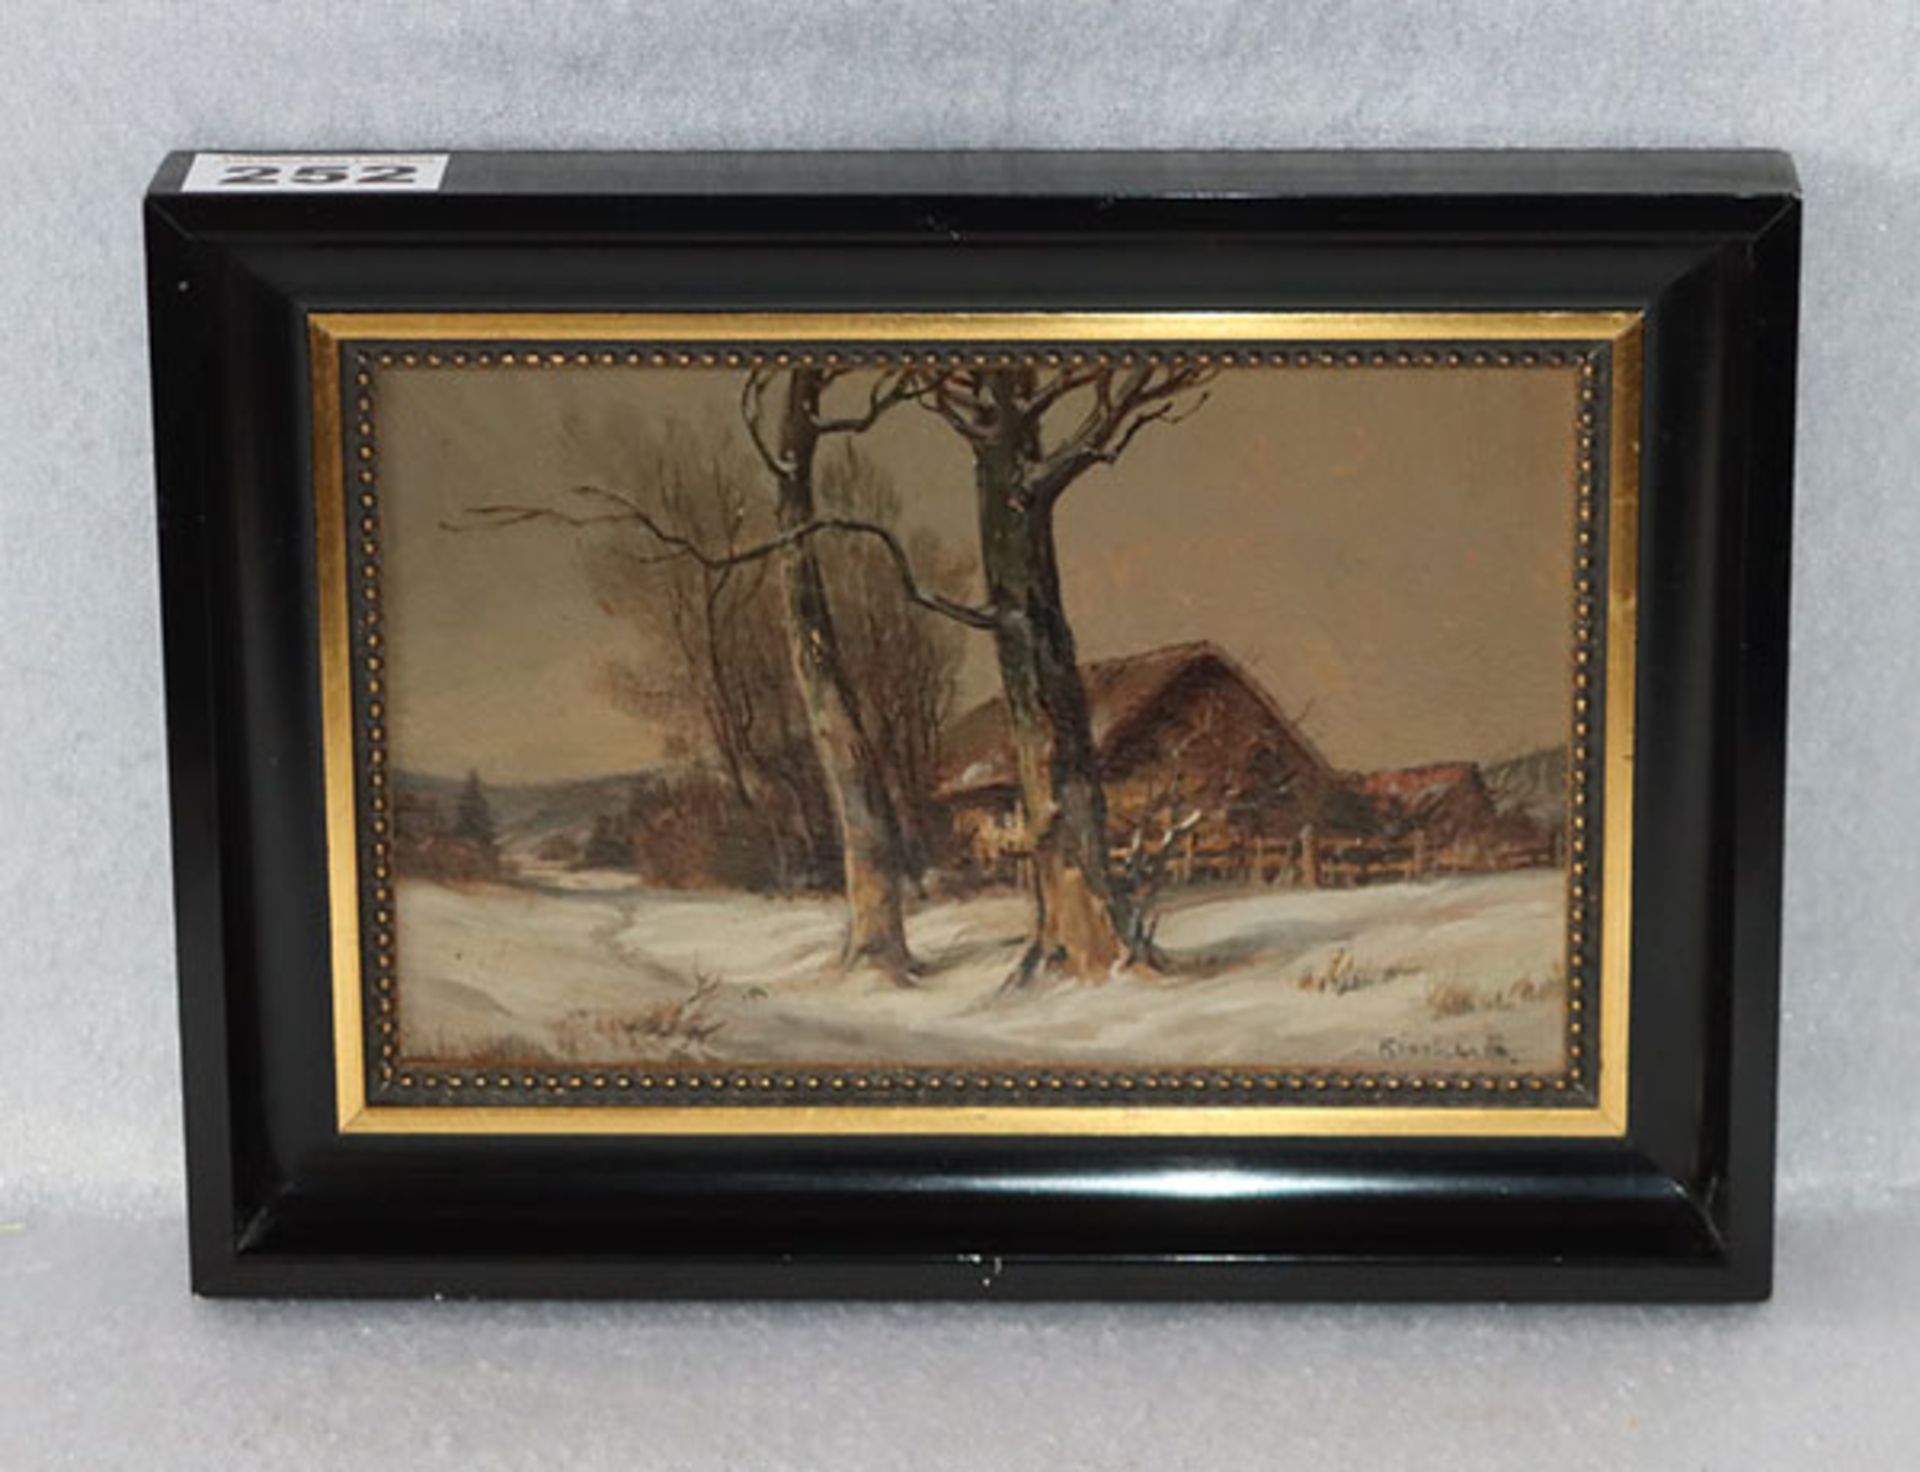 Gemälde ÖL/Malkarton 'Winterlandschaft mit Haus', undeutlich signiert, gerahmt, Rahmen bestossen,